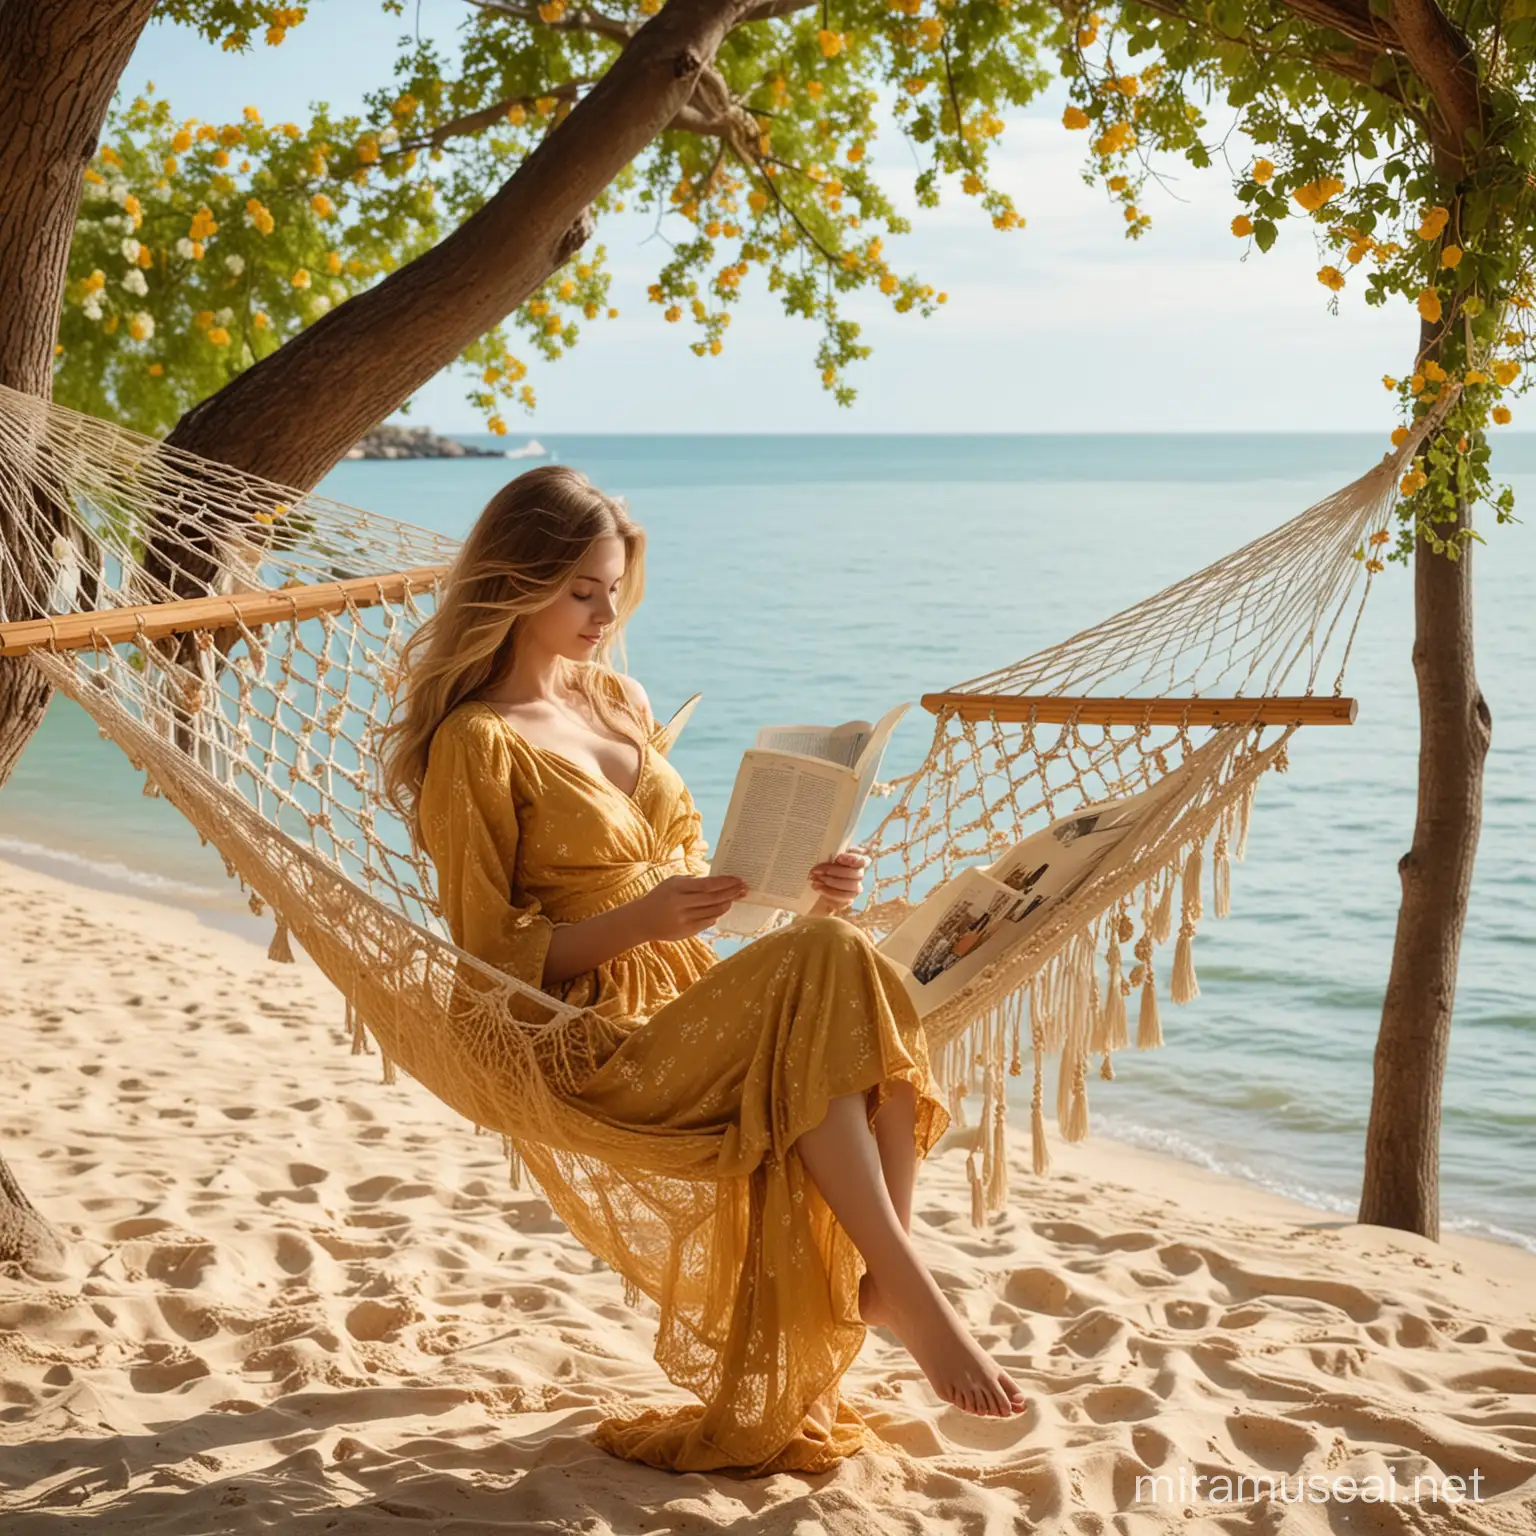 На красивом берегу моря на дереве висит гамак. В гамаке лежит красивая девушка в красивом золотистом длинном платье с роскошными волосами и читает книгу. Вокруг цветы. 